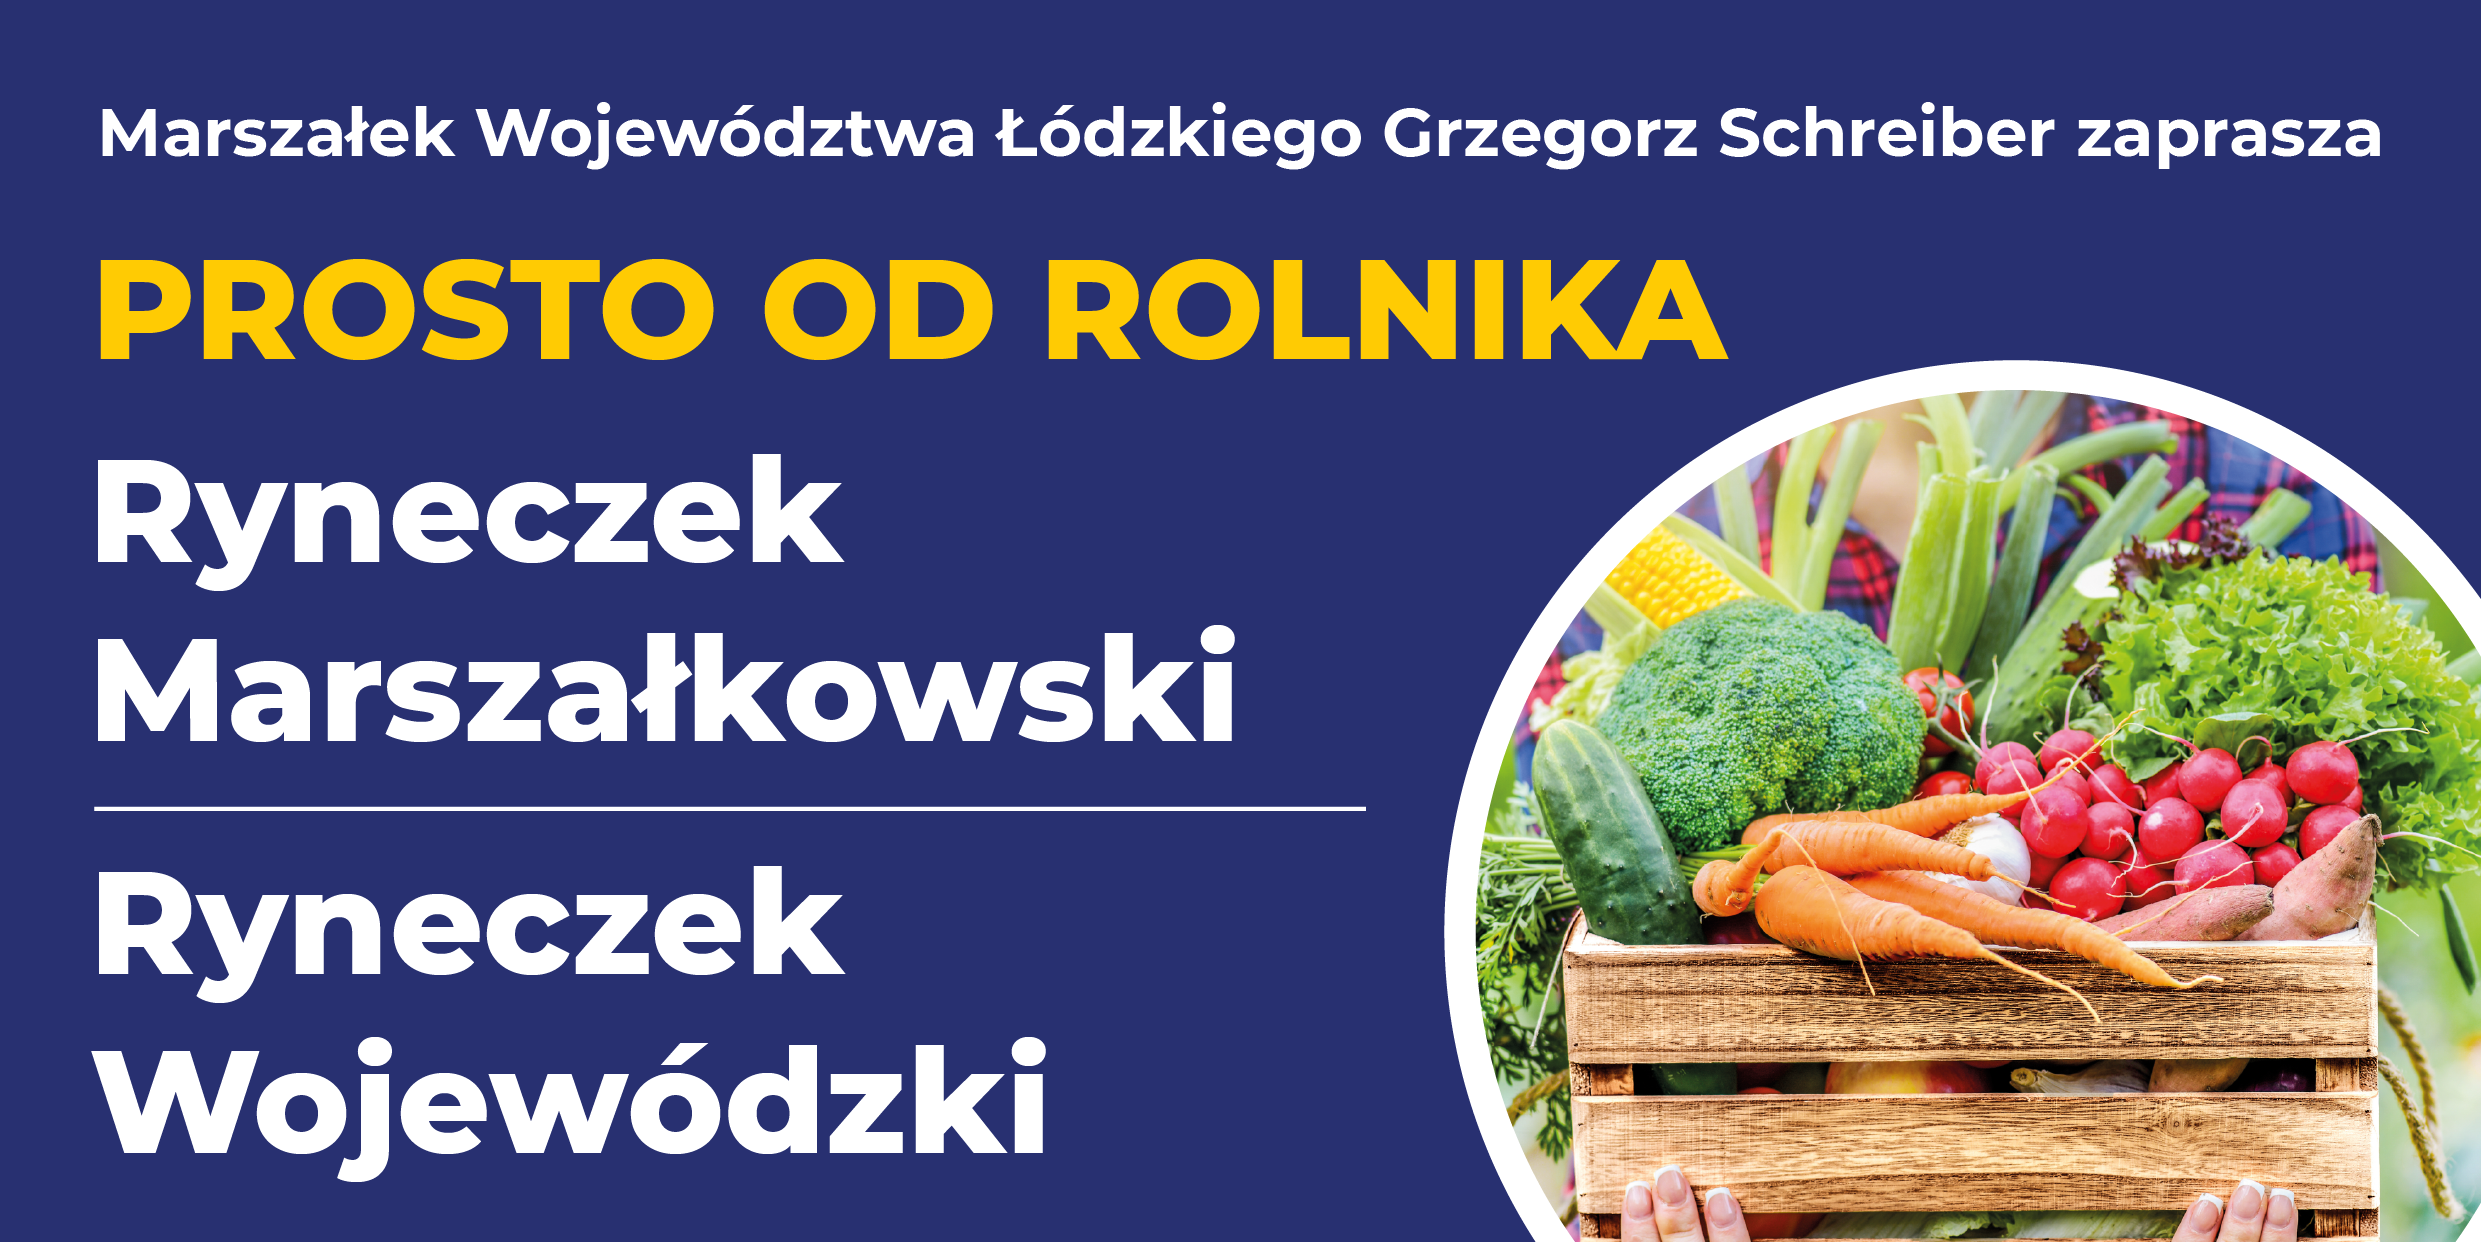 Grzegorz Schreiber Marszałek Województwa Łódzkiego zaprasza na ryneczek prosto od rolnika.